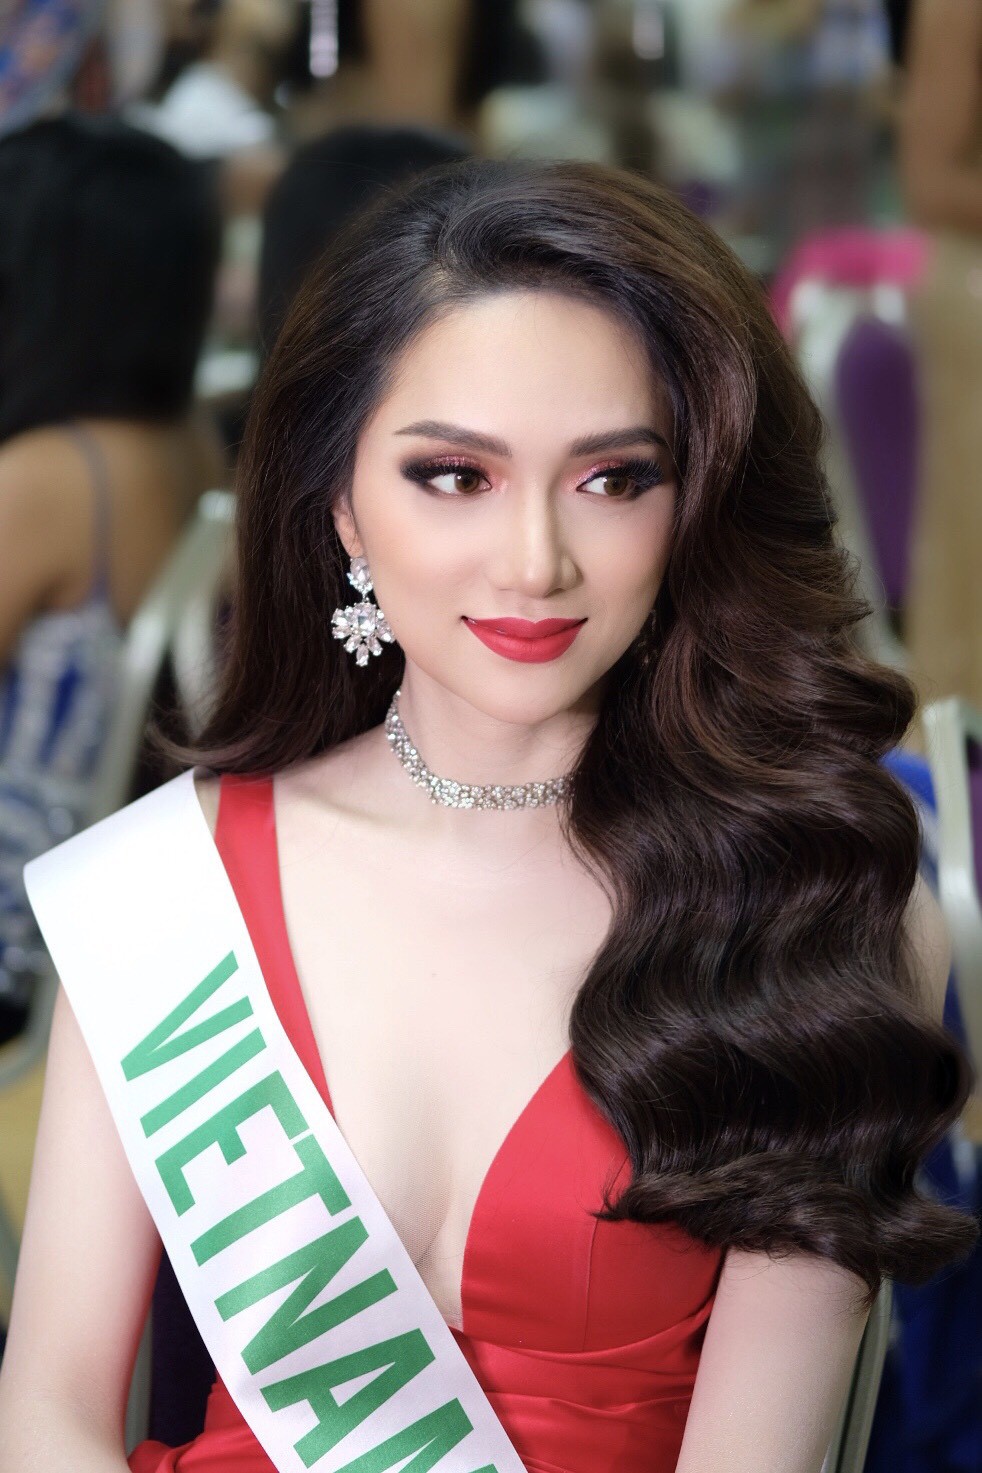 Đột nhập hậu trường chuẩn bị gấp rút của Hương Giang trước giờ diễn ra chung kết Hoa hậu Chuyển giới Quốc tế 2018 - Ảnh 5.